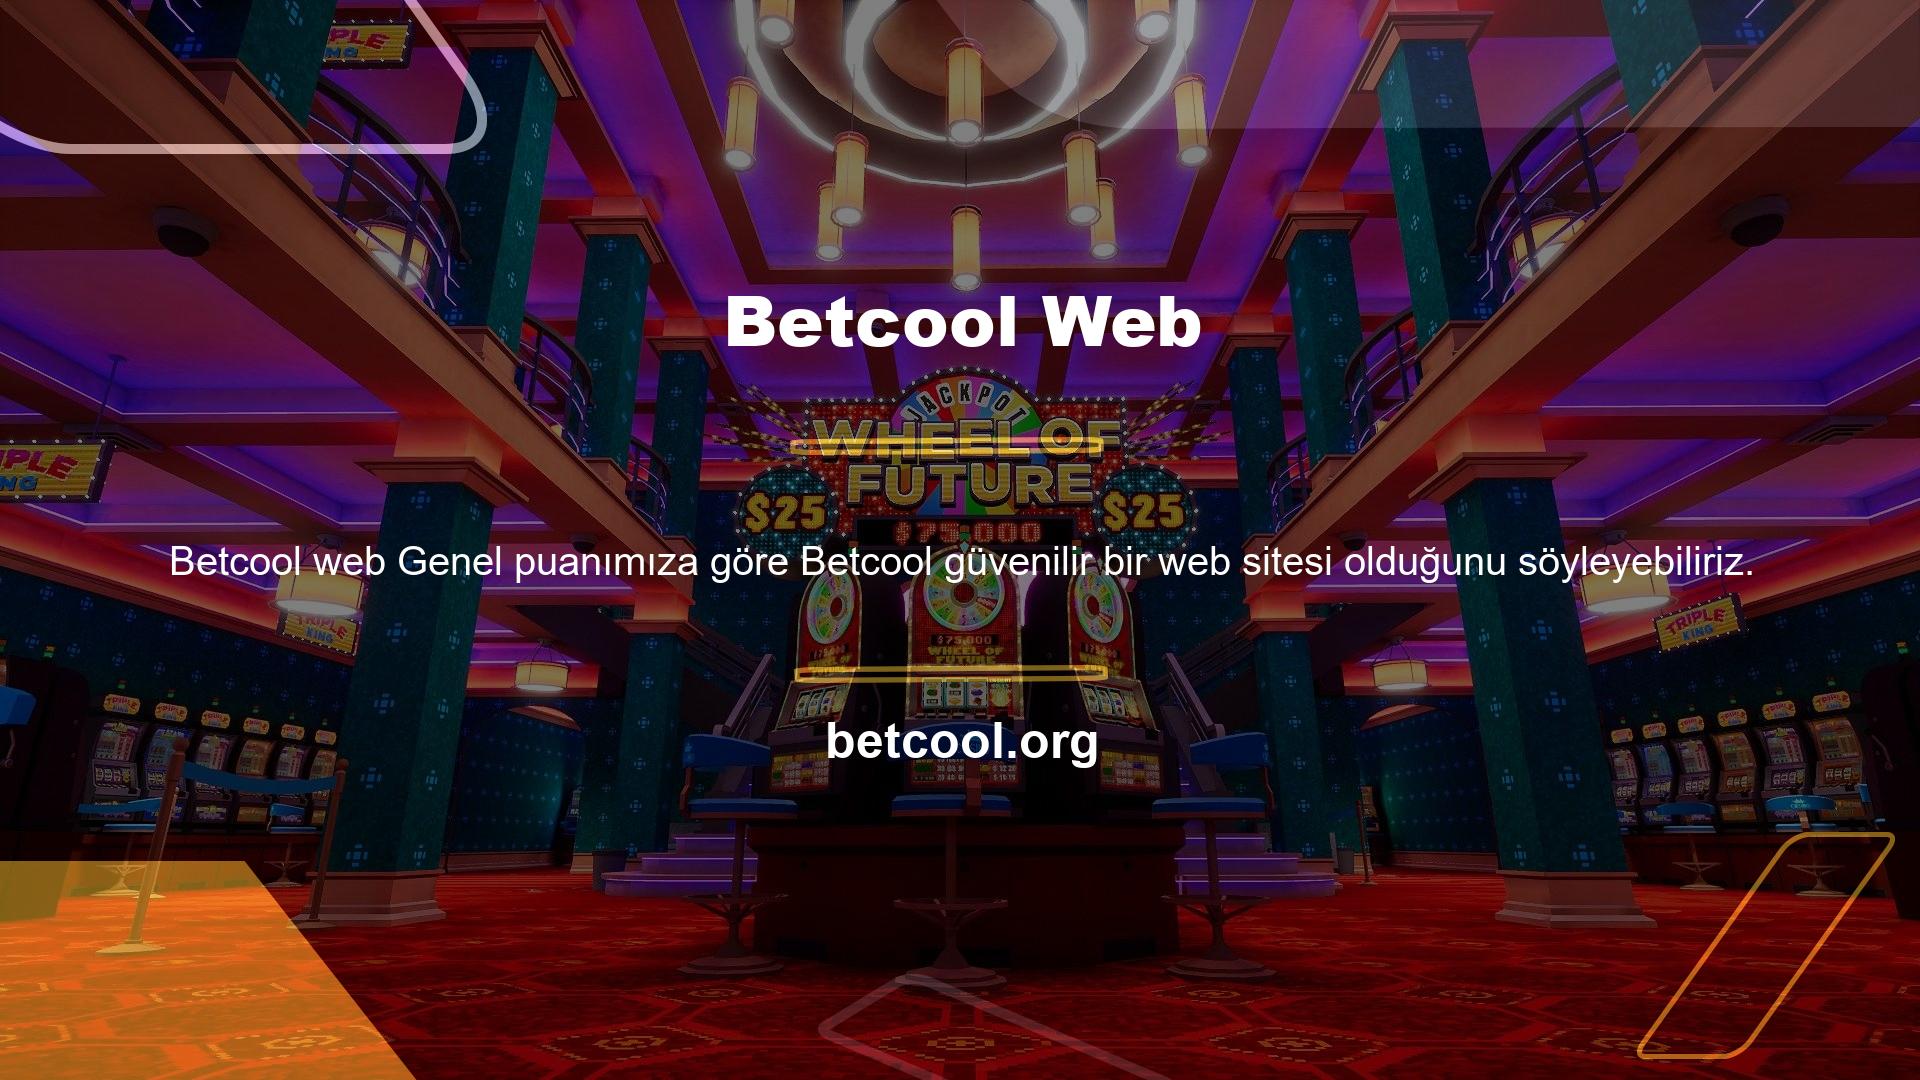 Betcool sosyal medya hesabına üye olarak canlı bahis sektörü hizmetleri alabileceğiniz ve kendinizi rahat hissedebileceğiniz bir bahis sitesidirSosyal medya hesabı Betcool, sosyal medya hesabı olan ve oldukça aktif kullanan bir bahisçidir